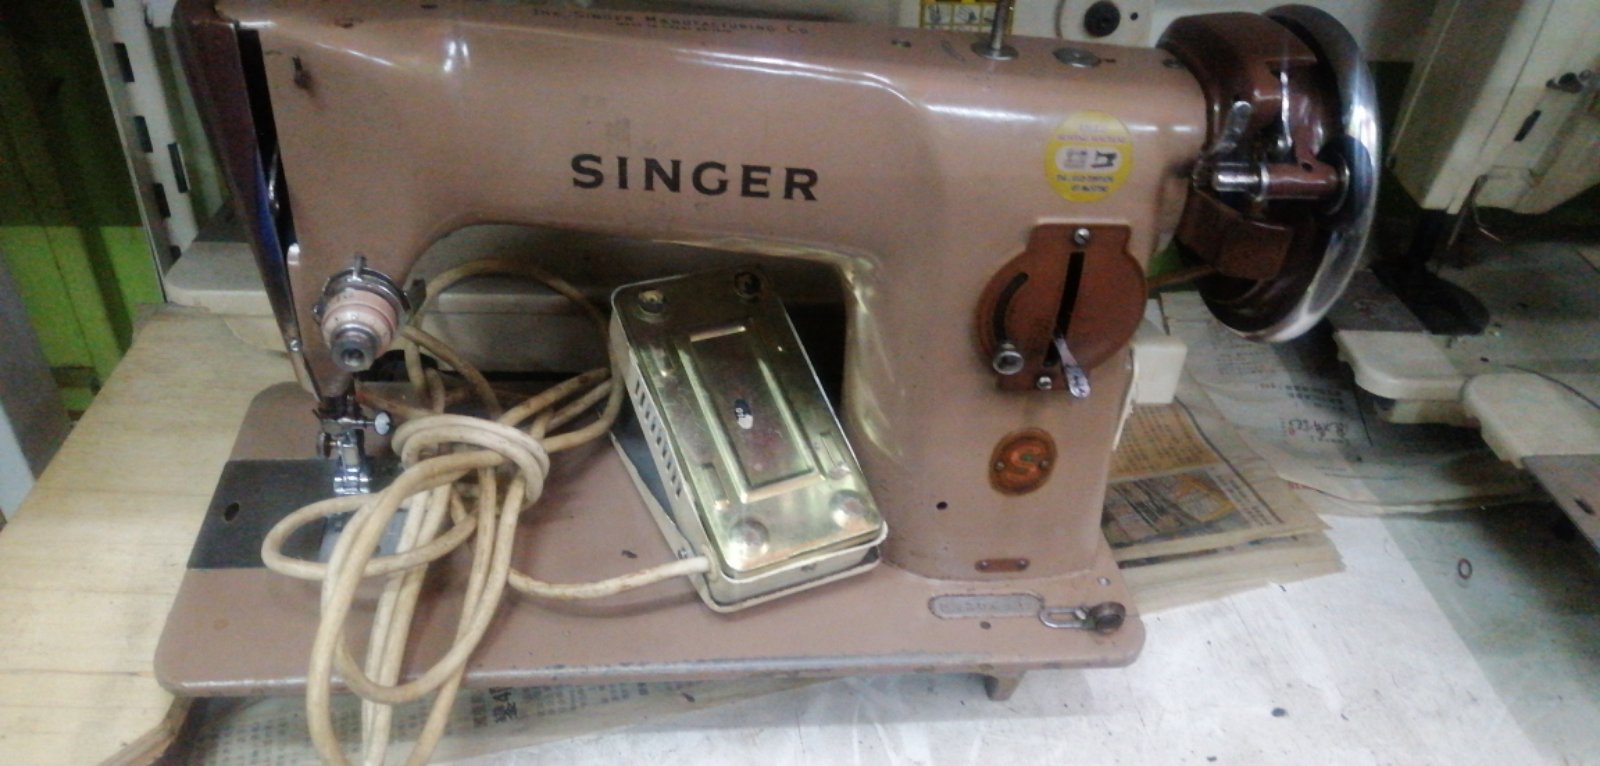 Repair Sevis Antique Singer Sewing Machine 